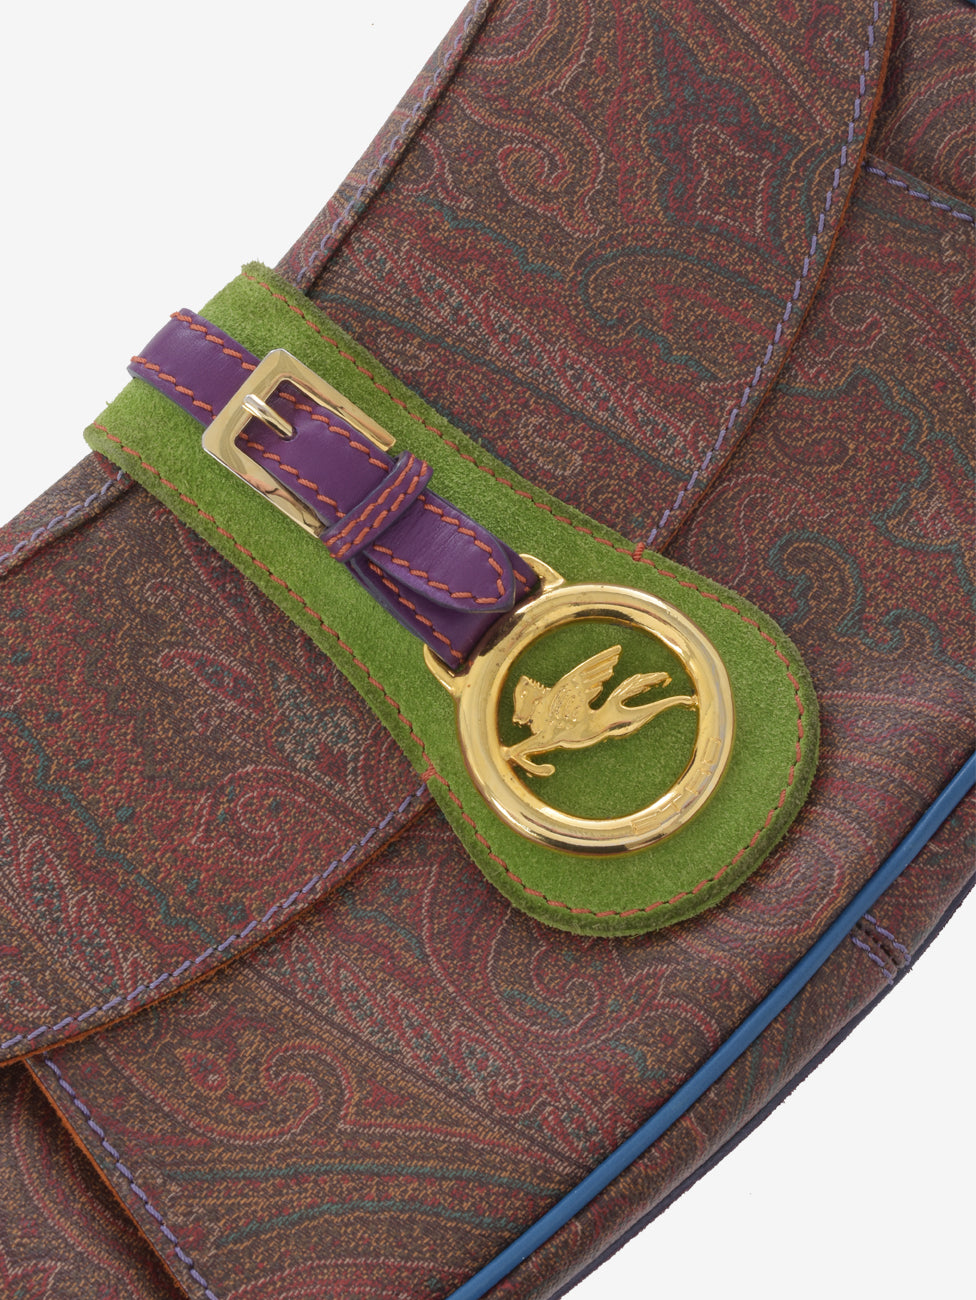 Etro Multicolor Patterned Shoulder Bag